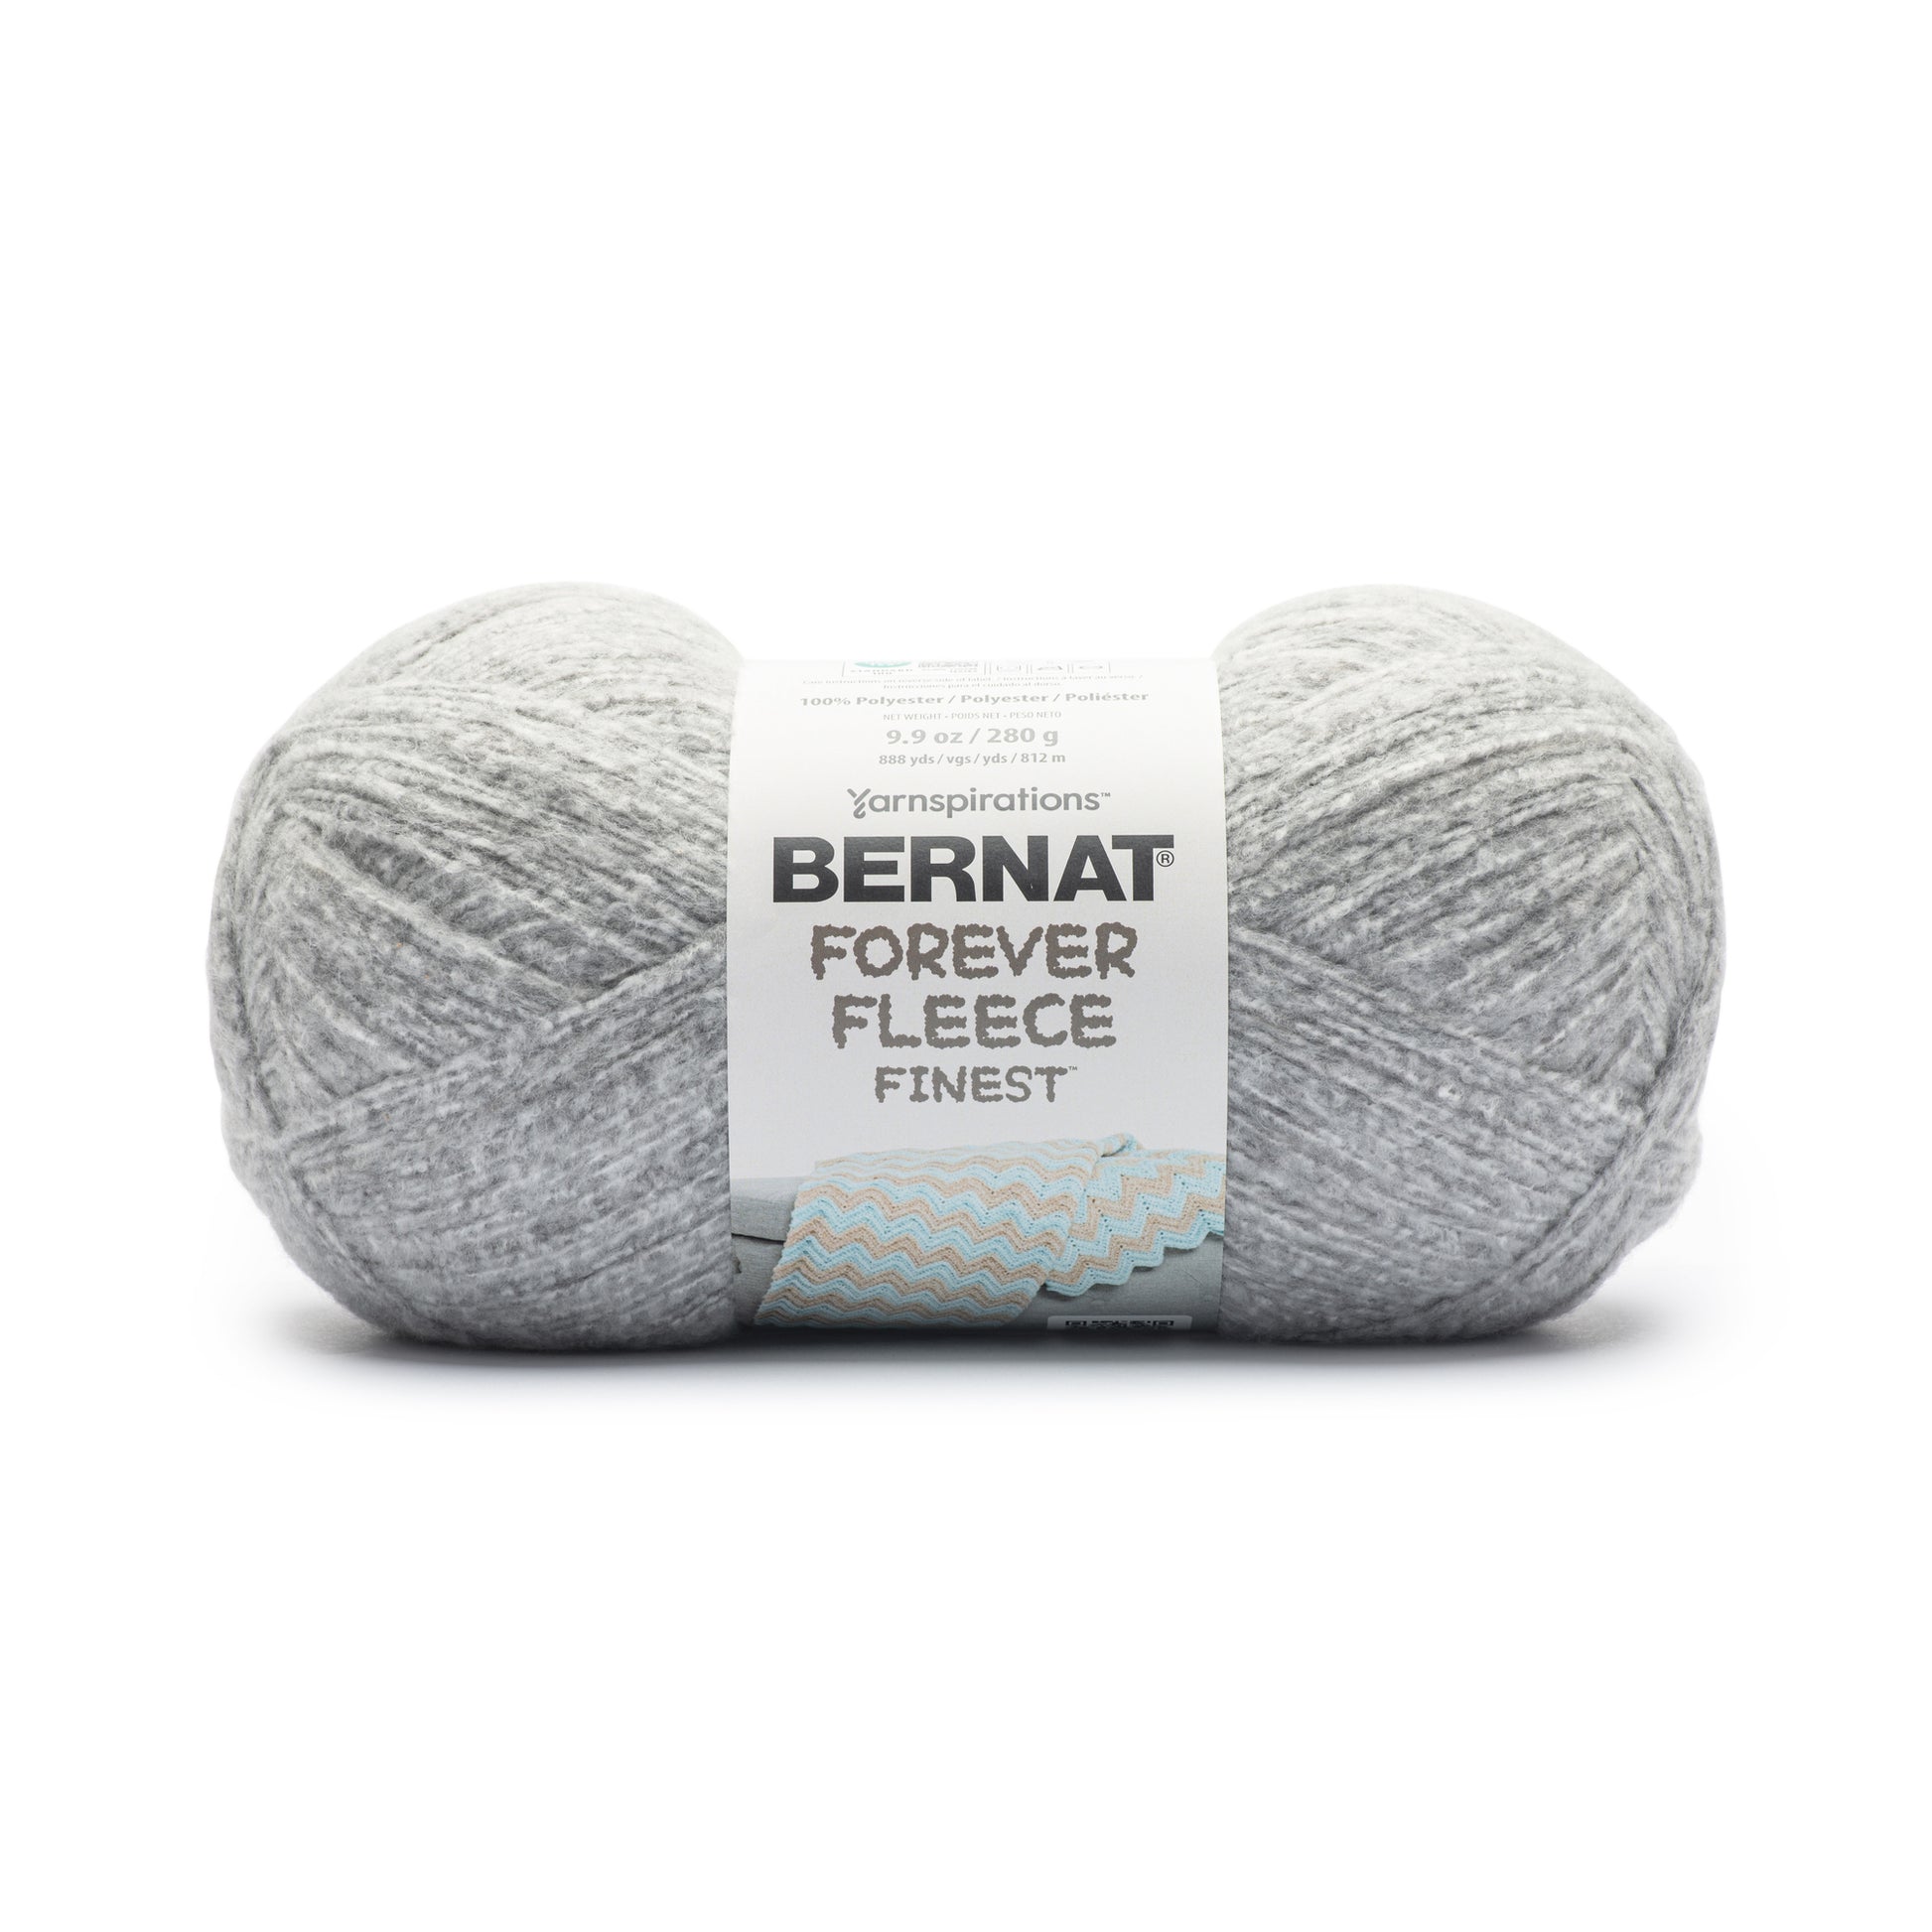 Bernat Forever Fleece Finest Yarn (280g/9.9oz)